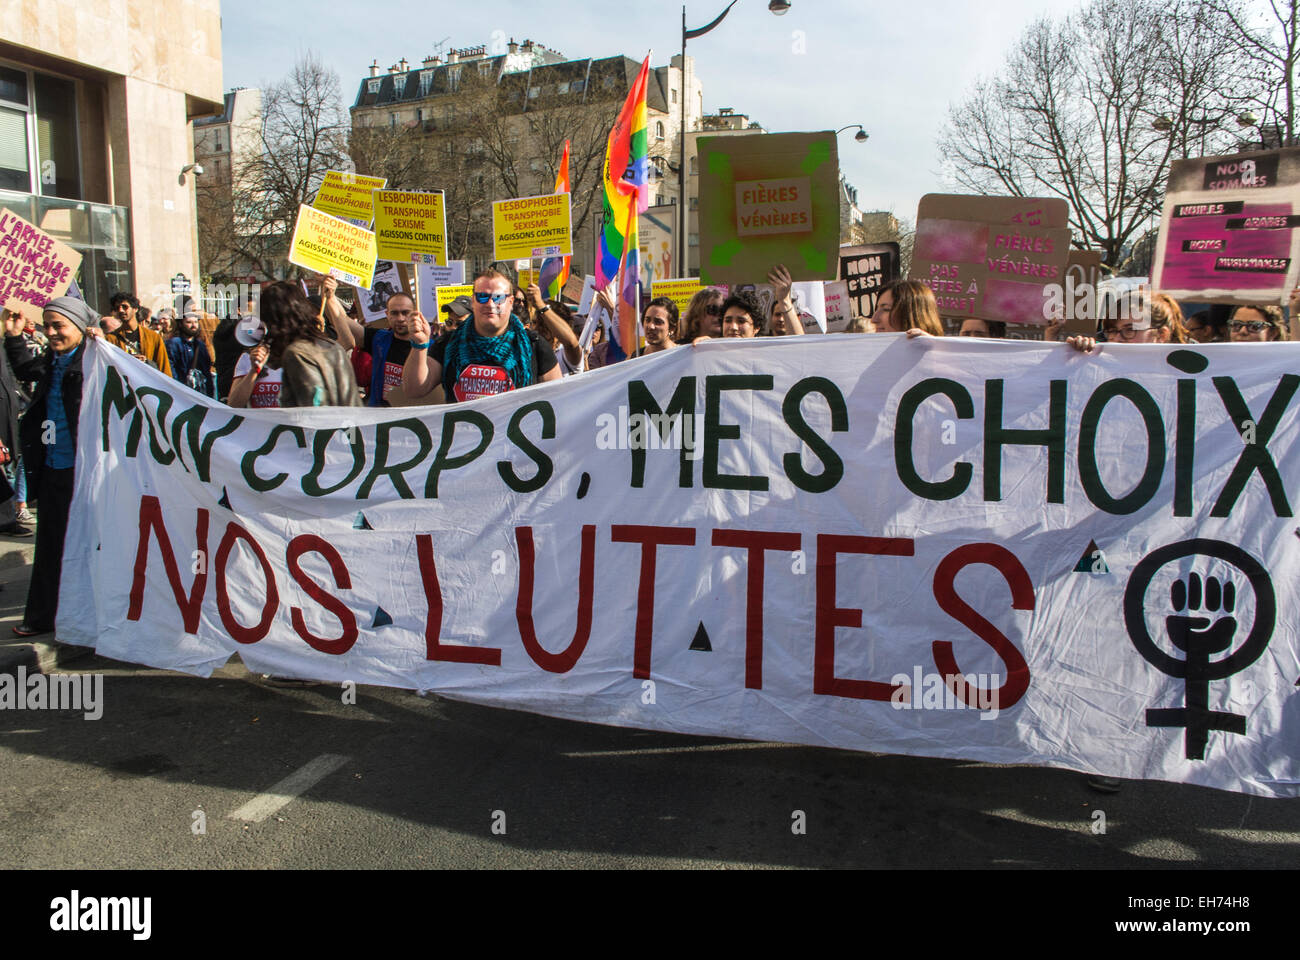 Paris, France. 8th mars, des groupes de féministes françaises défilent dans le cadre de la manifestation de la Journée internationale de la femme, défilent avec des bannières et des panneaux sur la rue, le mouvement de la marche des droits des femmes, le rassemblement pro-choix, les manifestations pro-avortement Banque D'Images